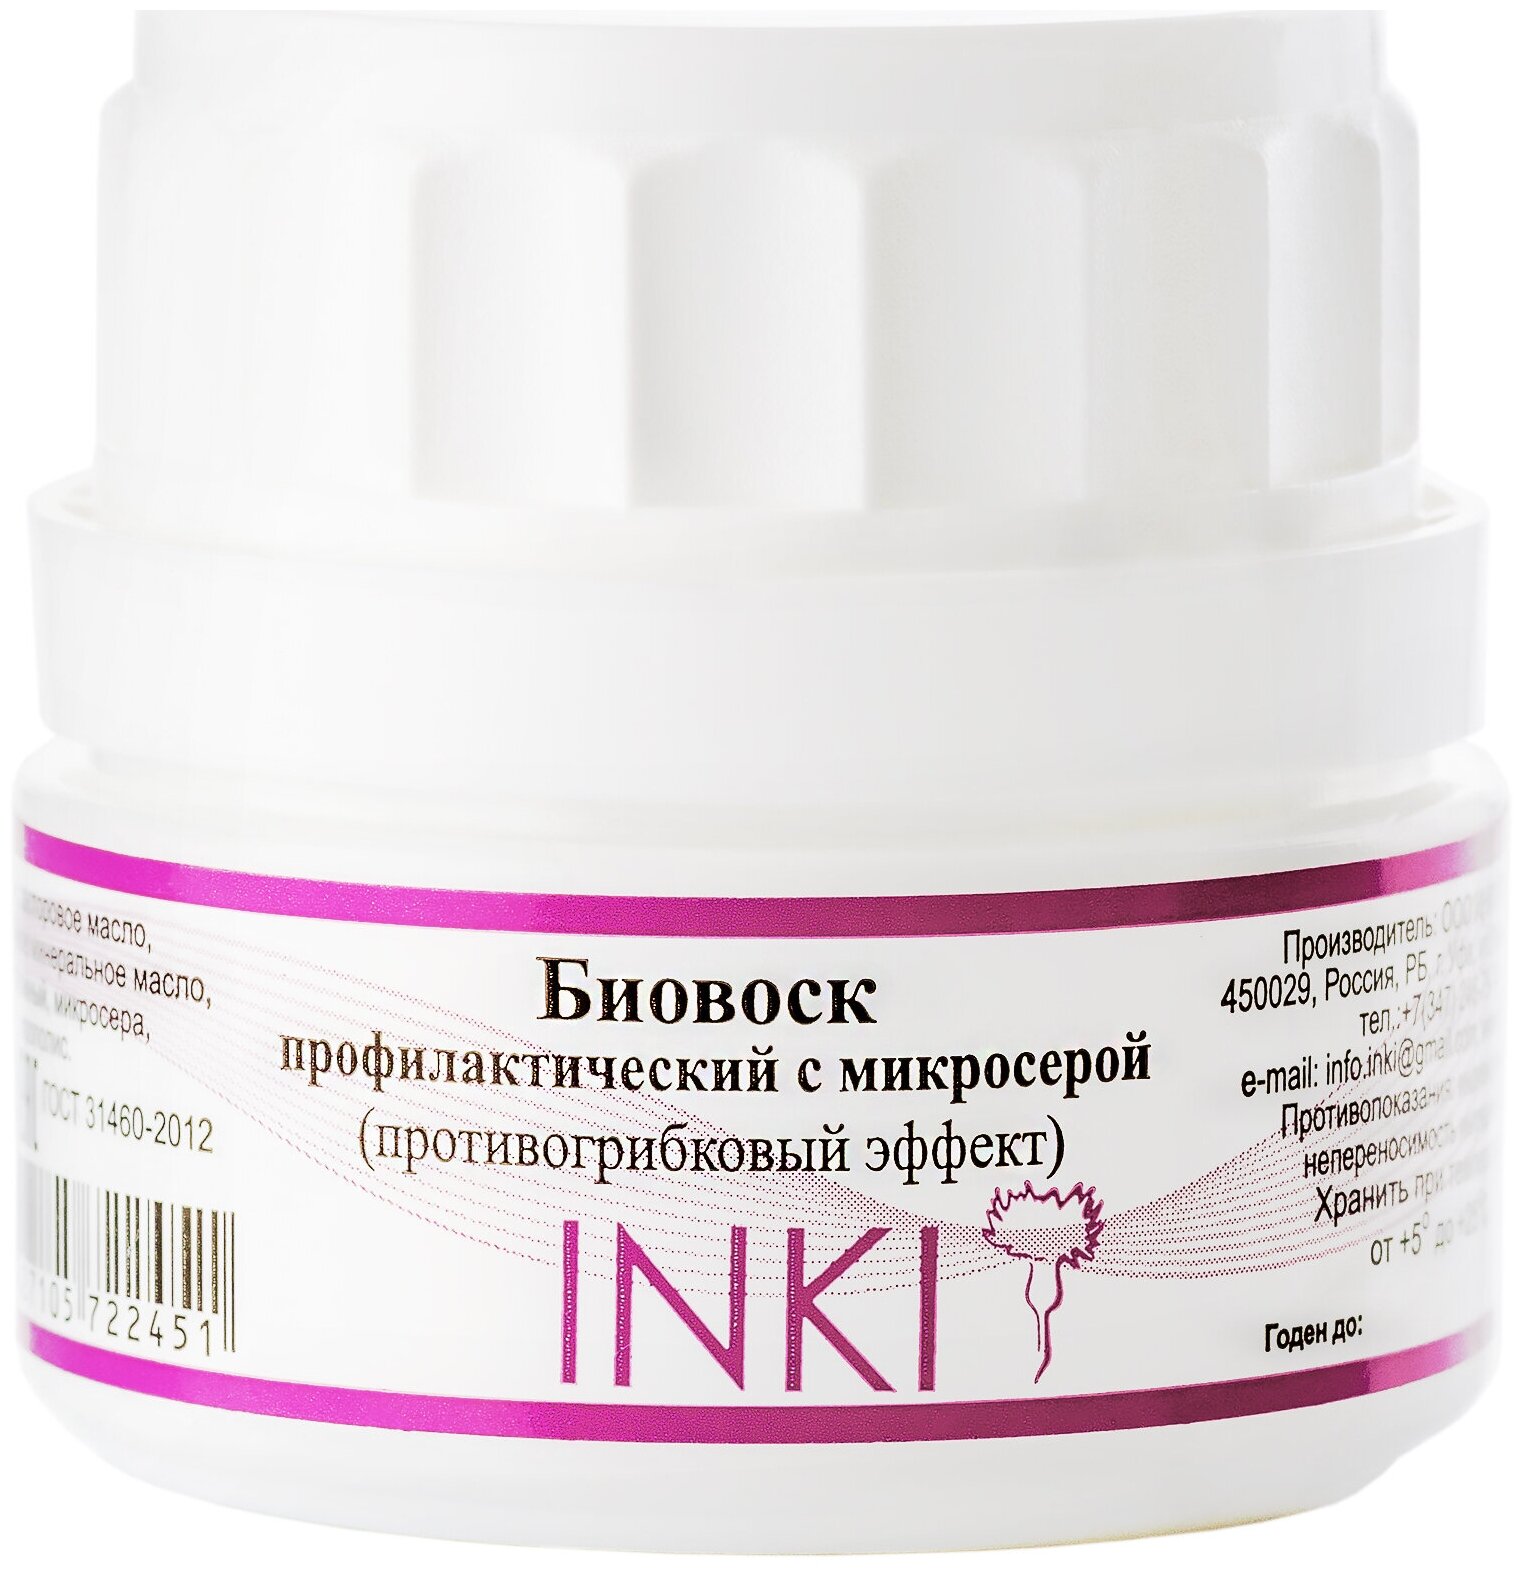 INKI Биовоск профилактический с микросерой(противогрибковый эффект), 35 мл